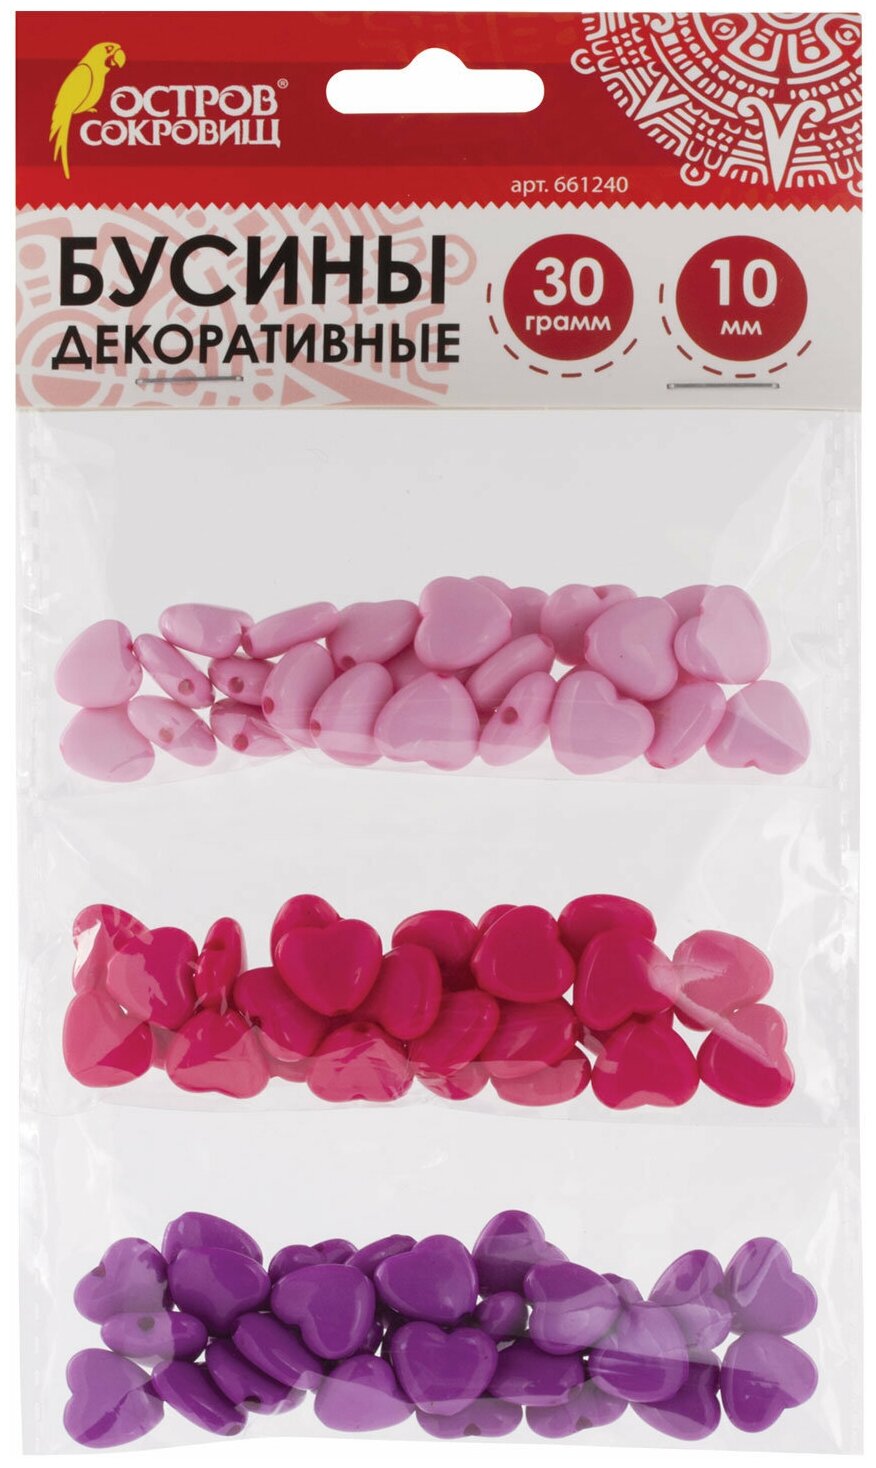 Бусины для творчества "Сердце", 10 мм, 30 грамм, светло-розовые, розовые, фиолетовые, остров сокровищ, 661240